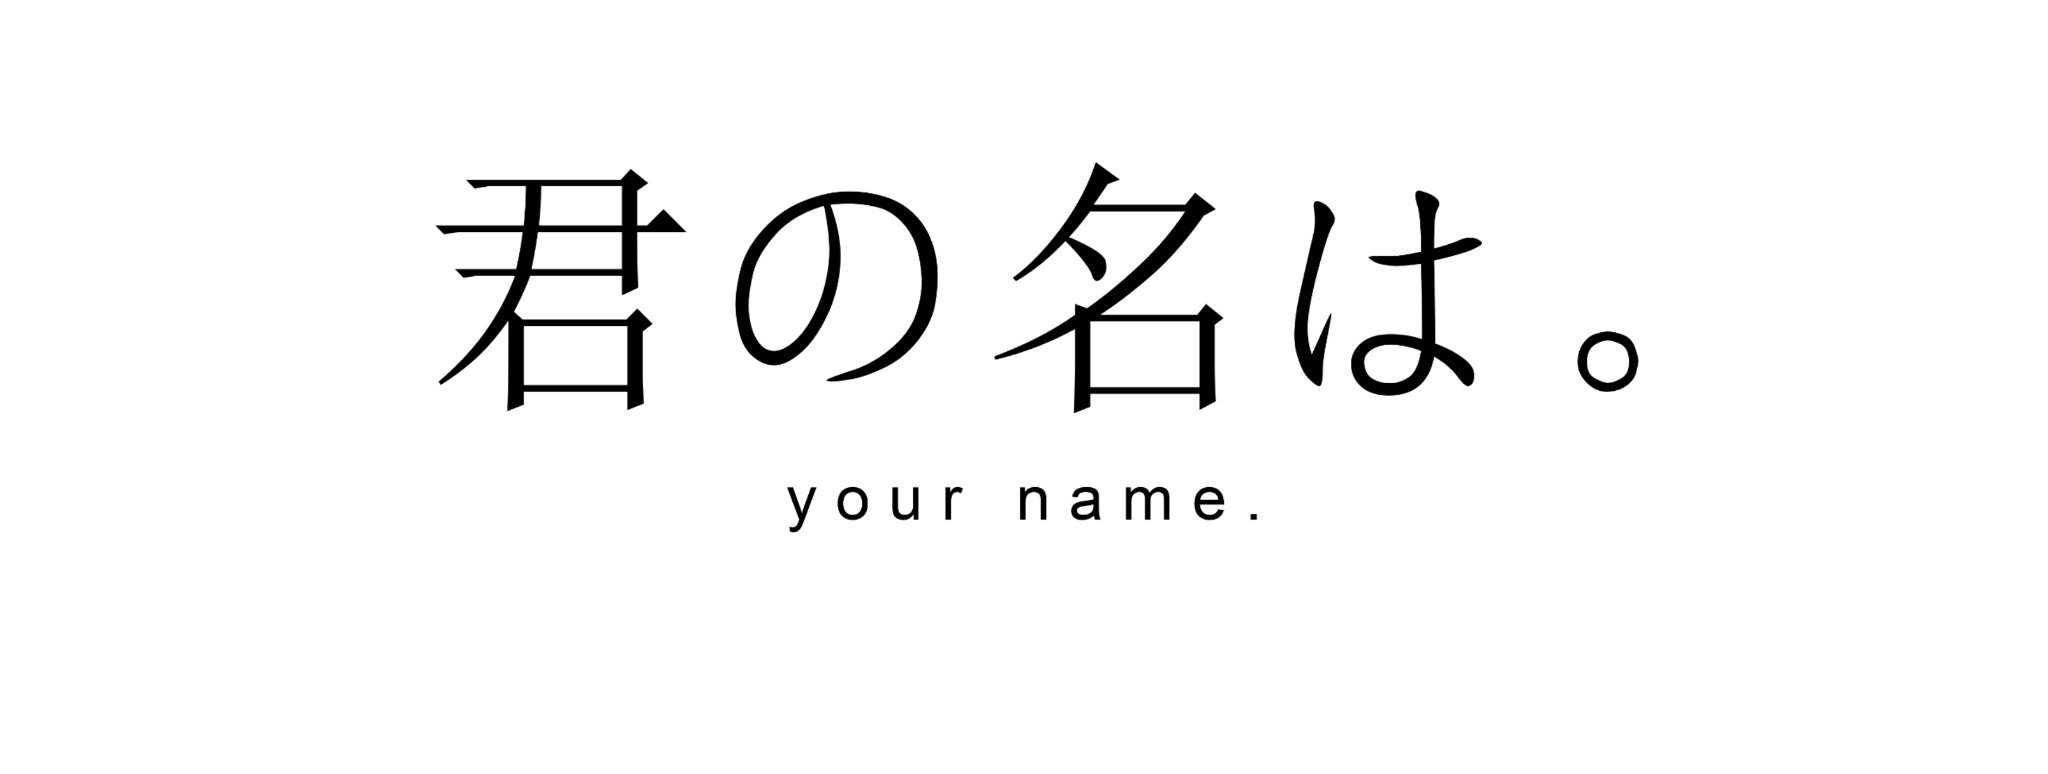 Твое имя логотип